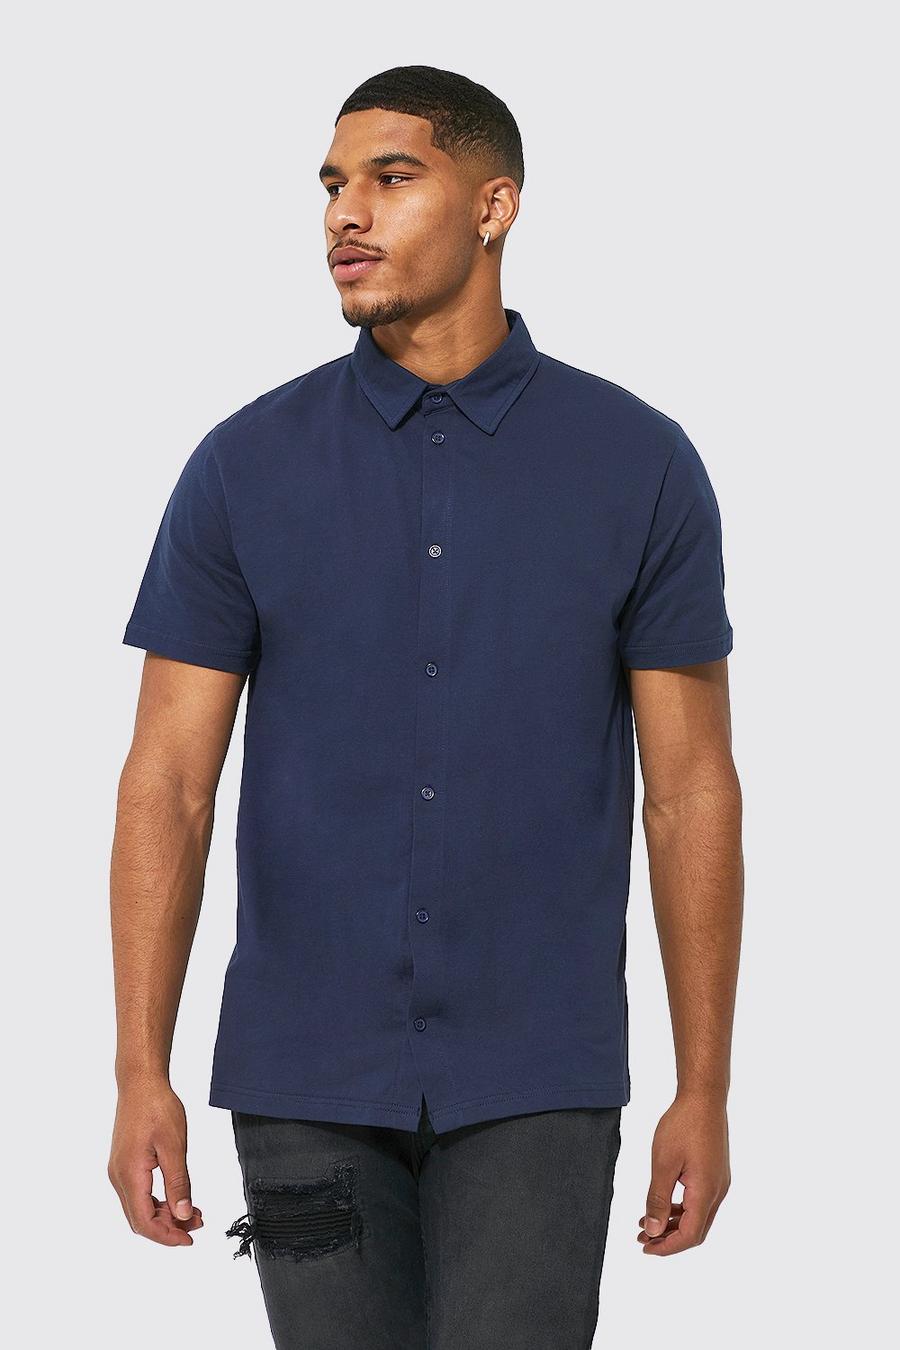 Dark navy blue Tall Short Sleeve Jersey Shirt